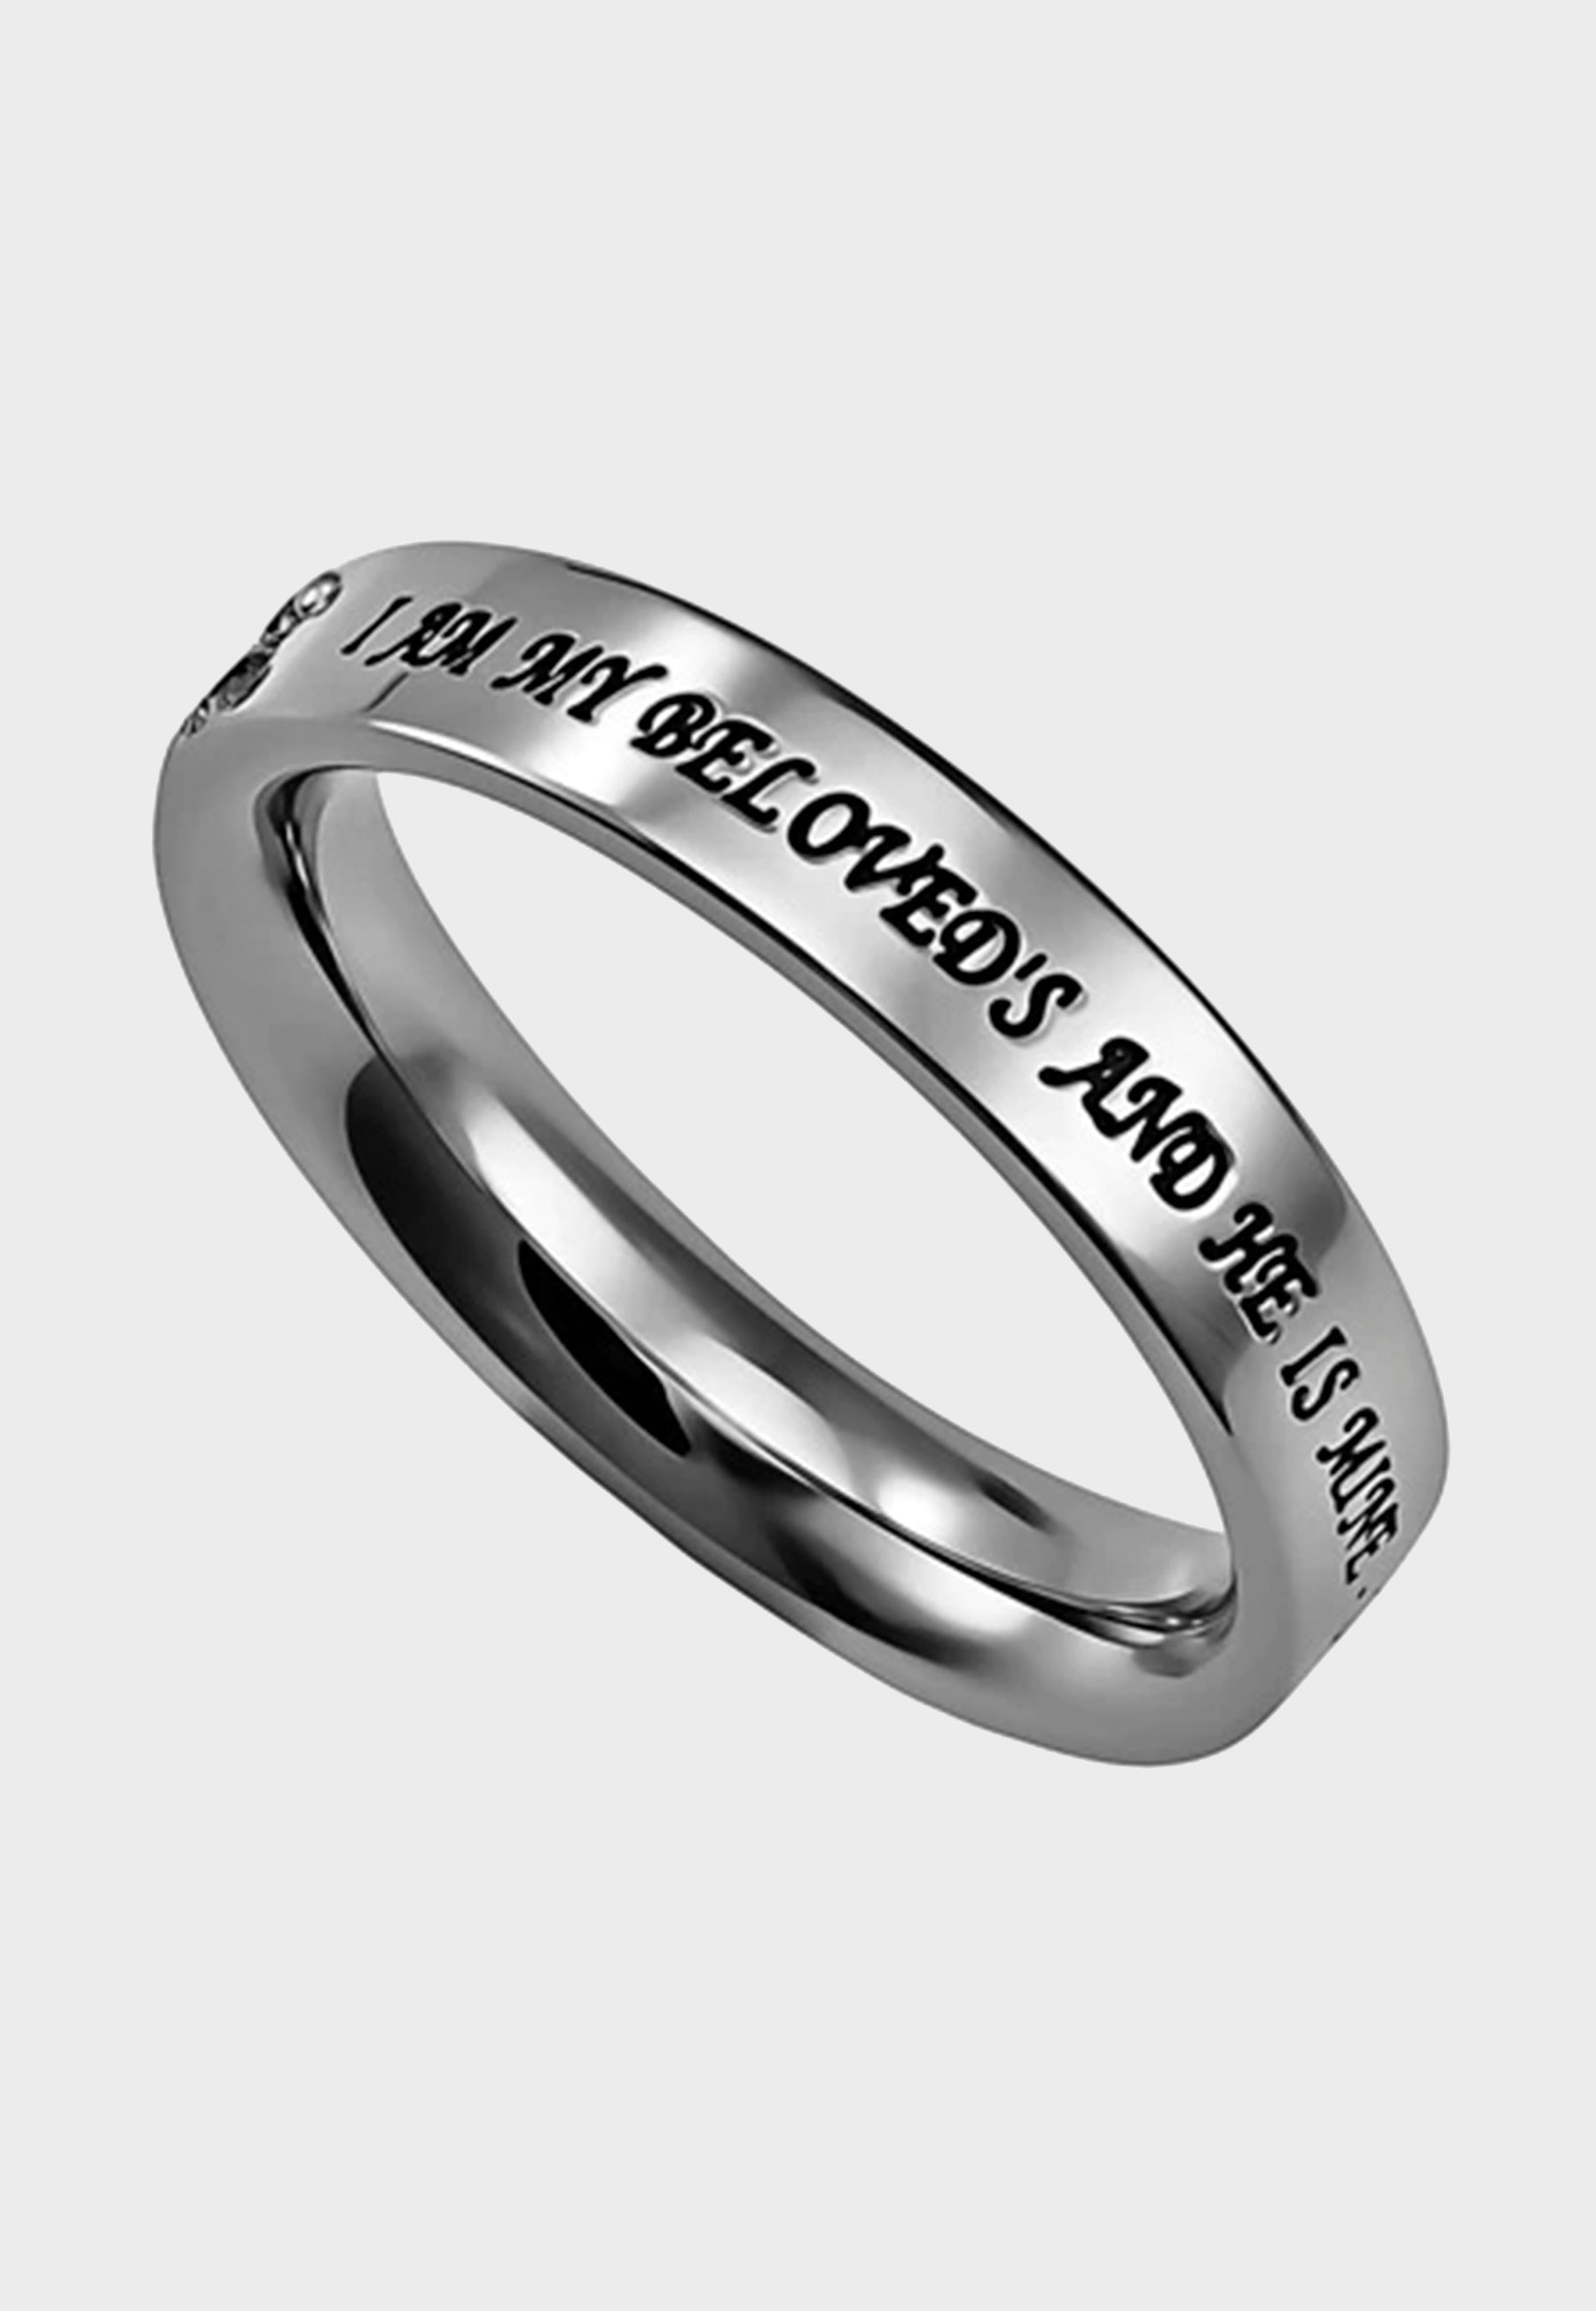 Christian ring for women